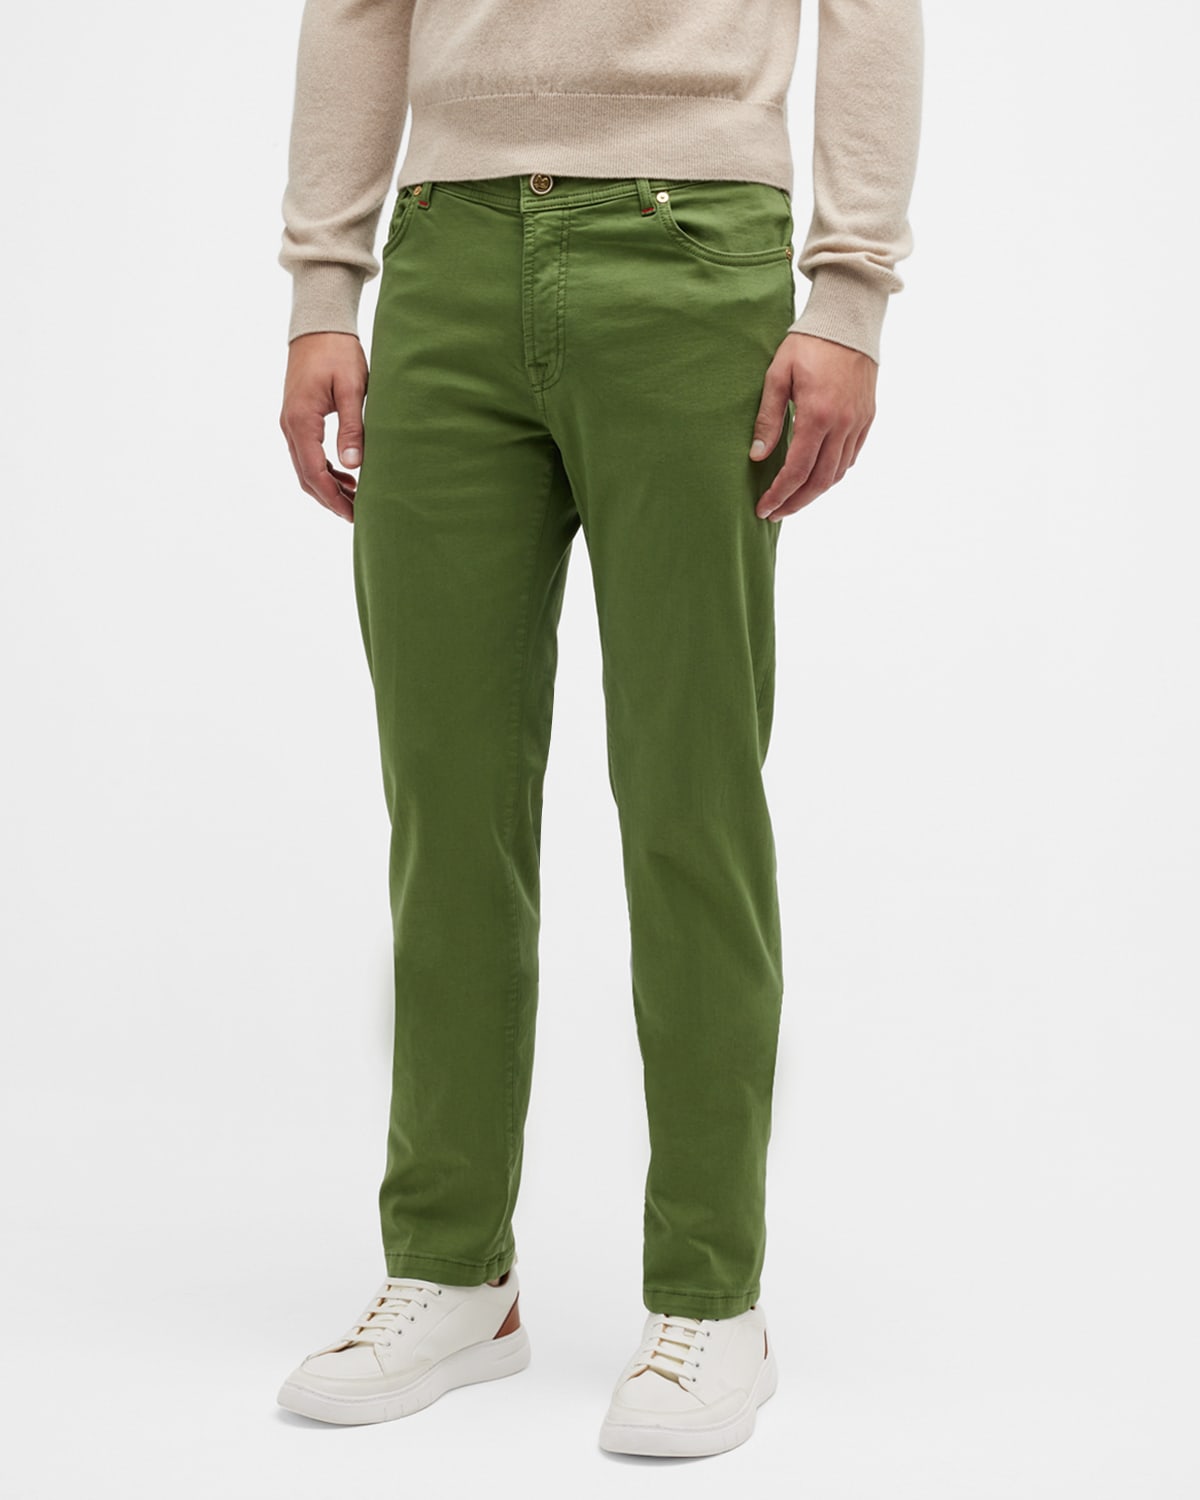 Marco Pescarolo Men's Cashmere Stretch 5-Pocket Pants